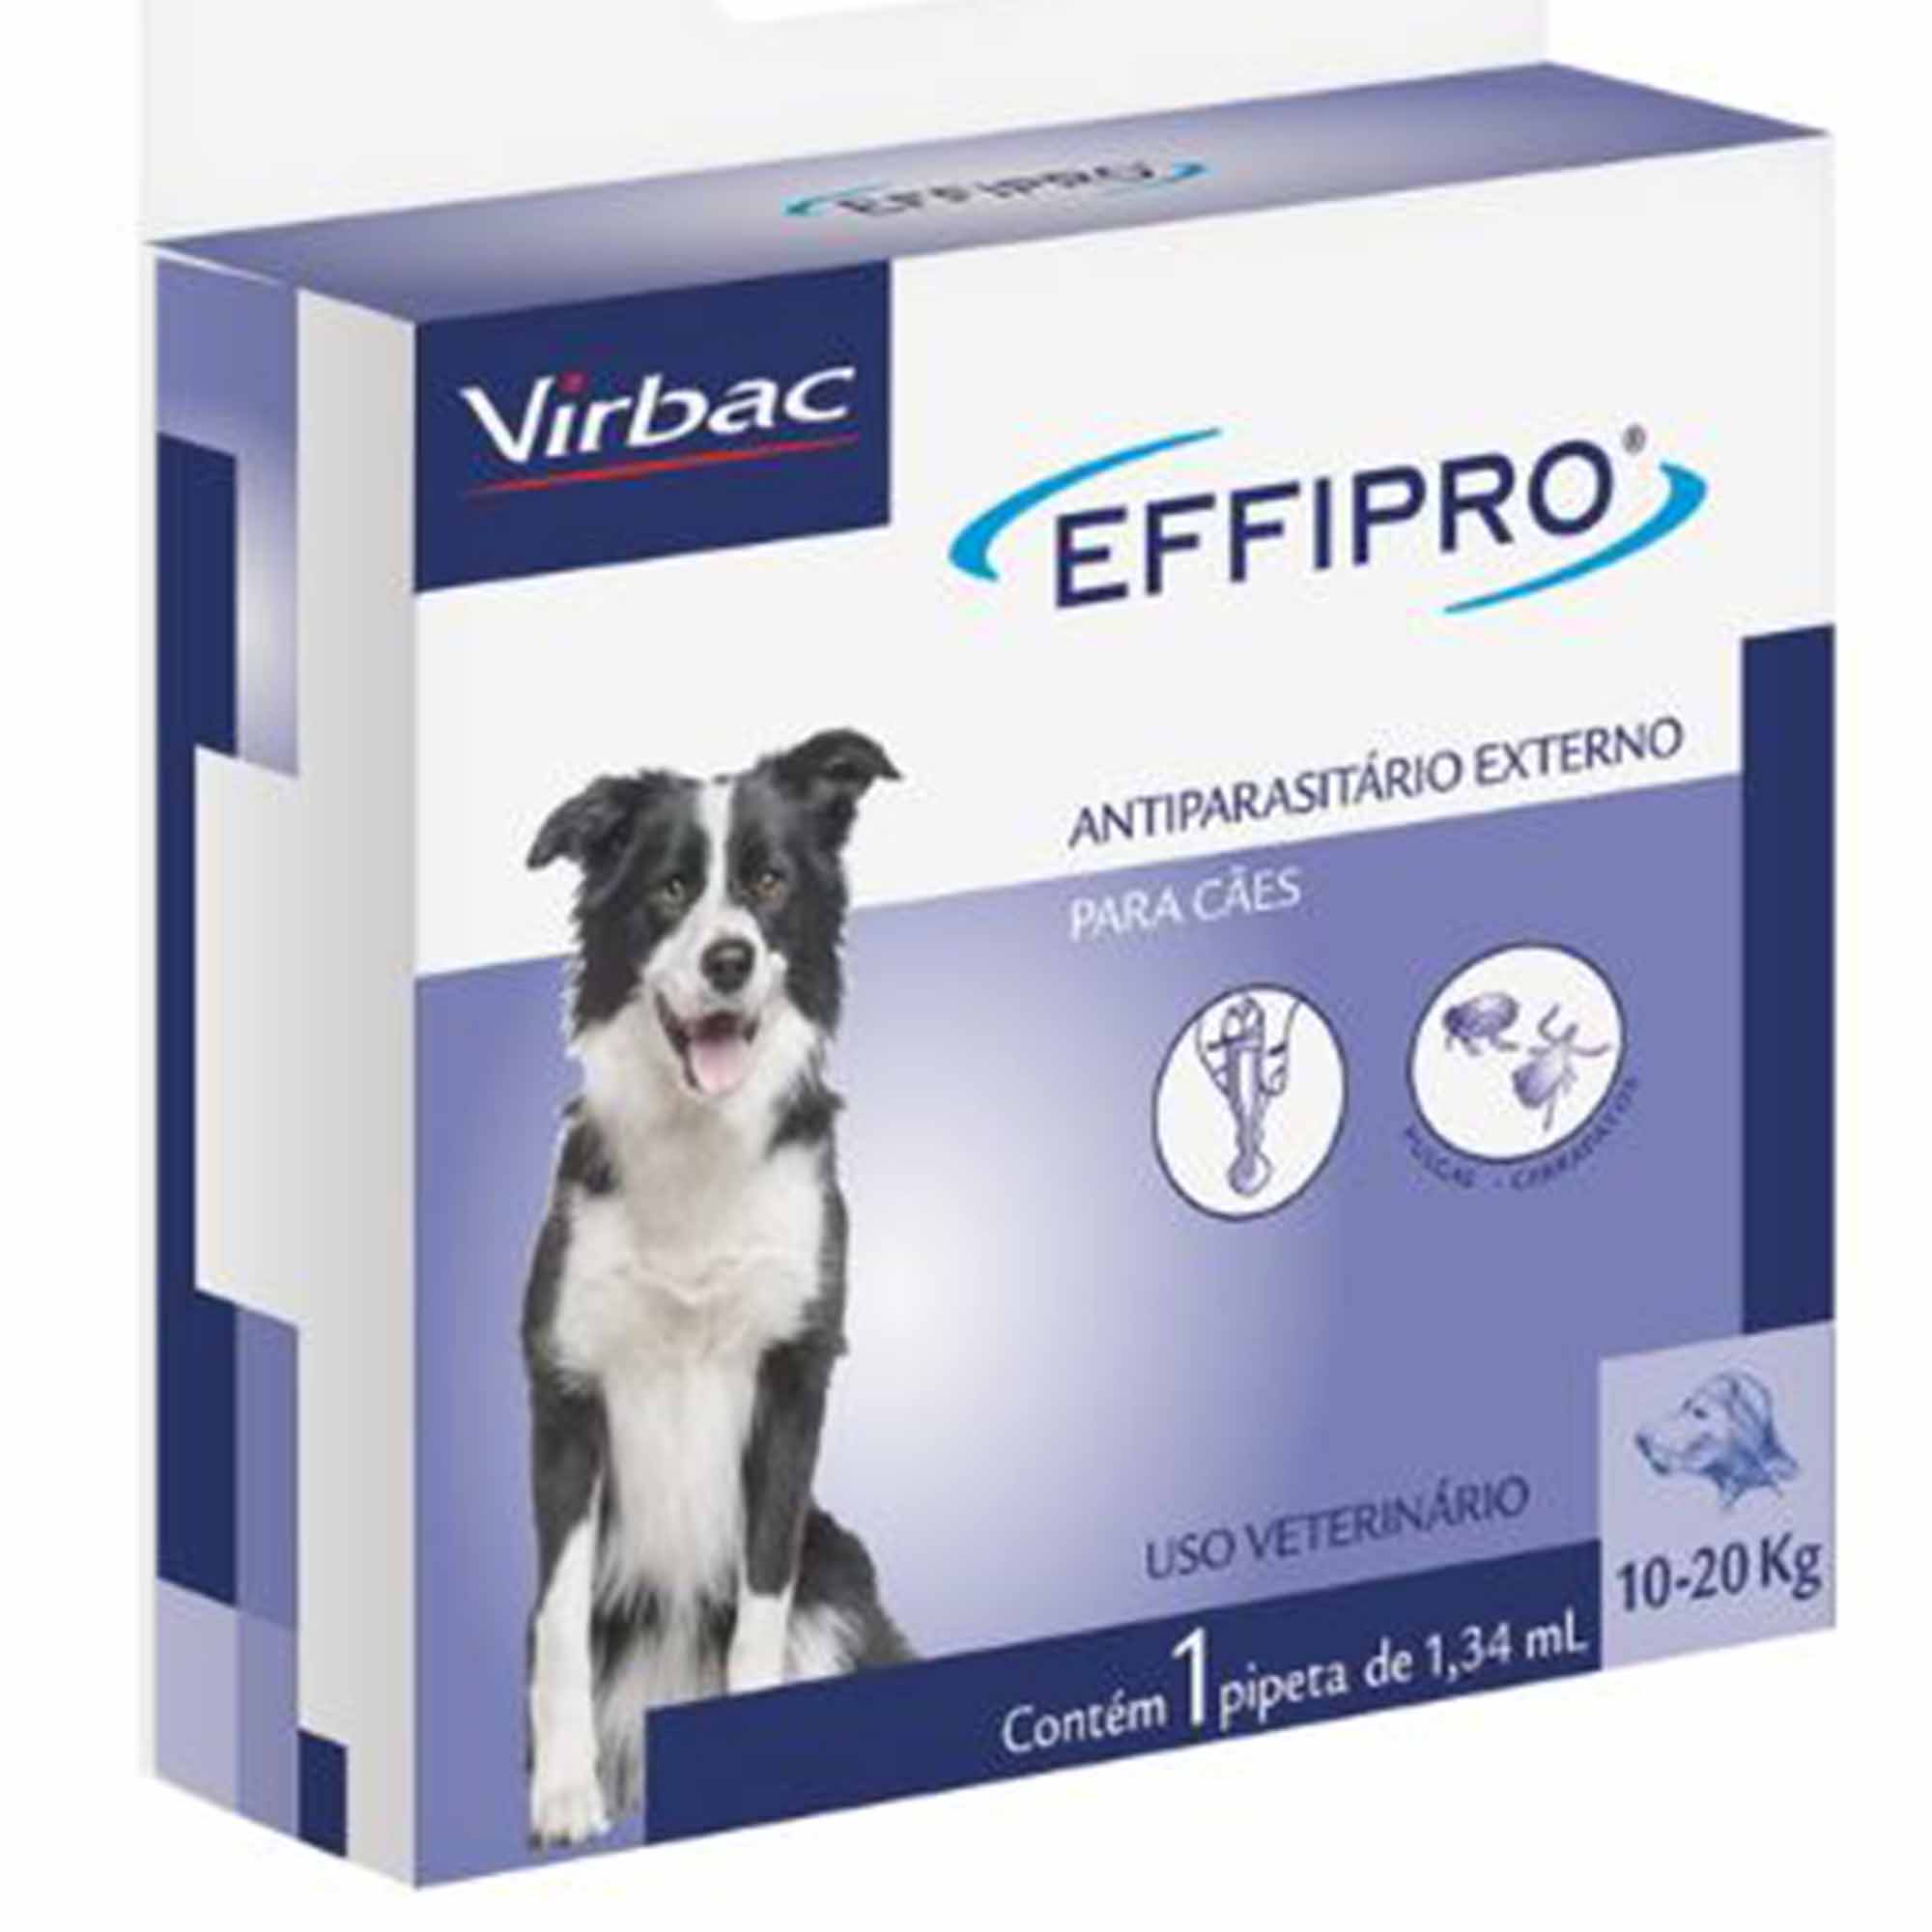 Effipro 1,34ml - Antiparasitário para Cães acima de 10kg